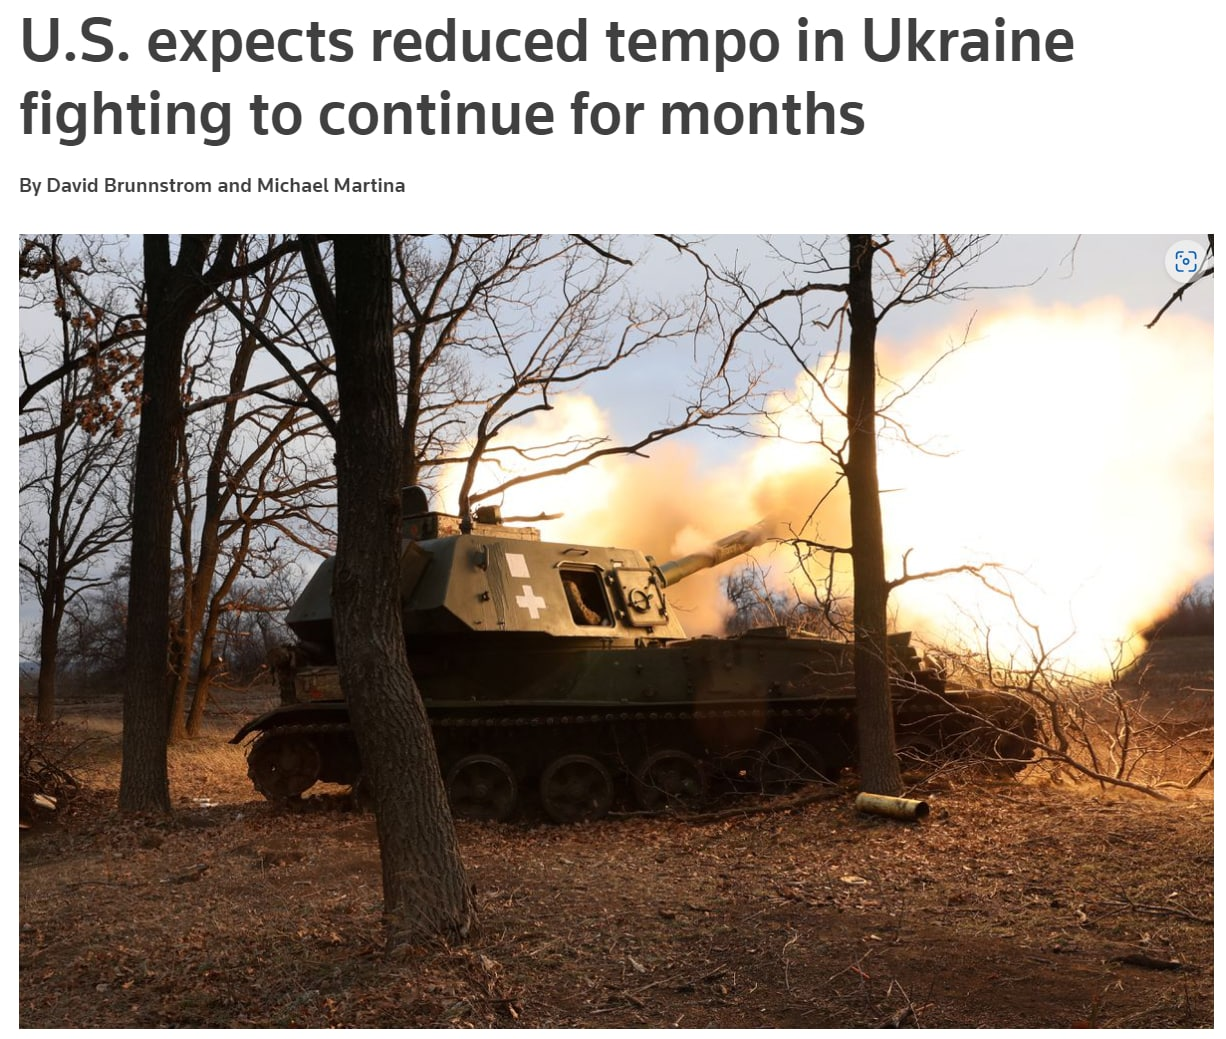 Глава разведки США считает, что в условиях зимы боевые действия в Украине замедлятся